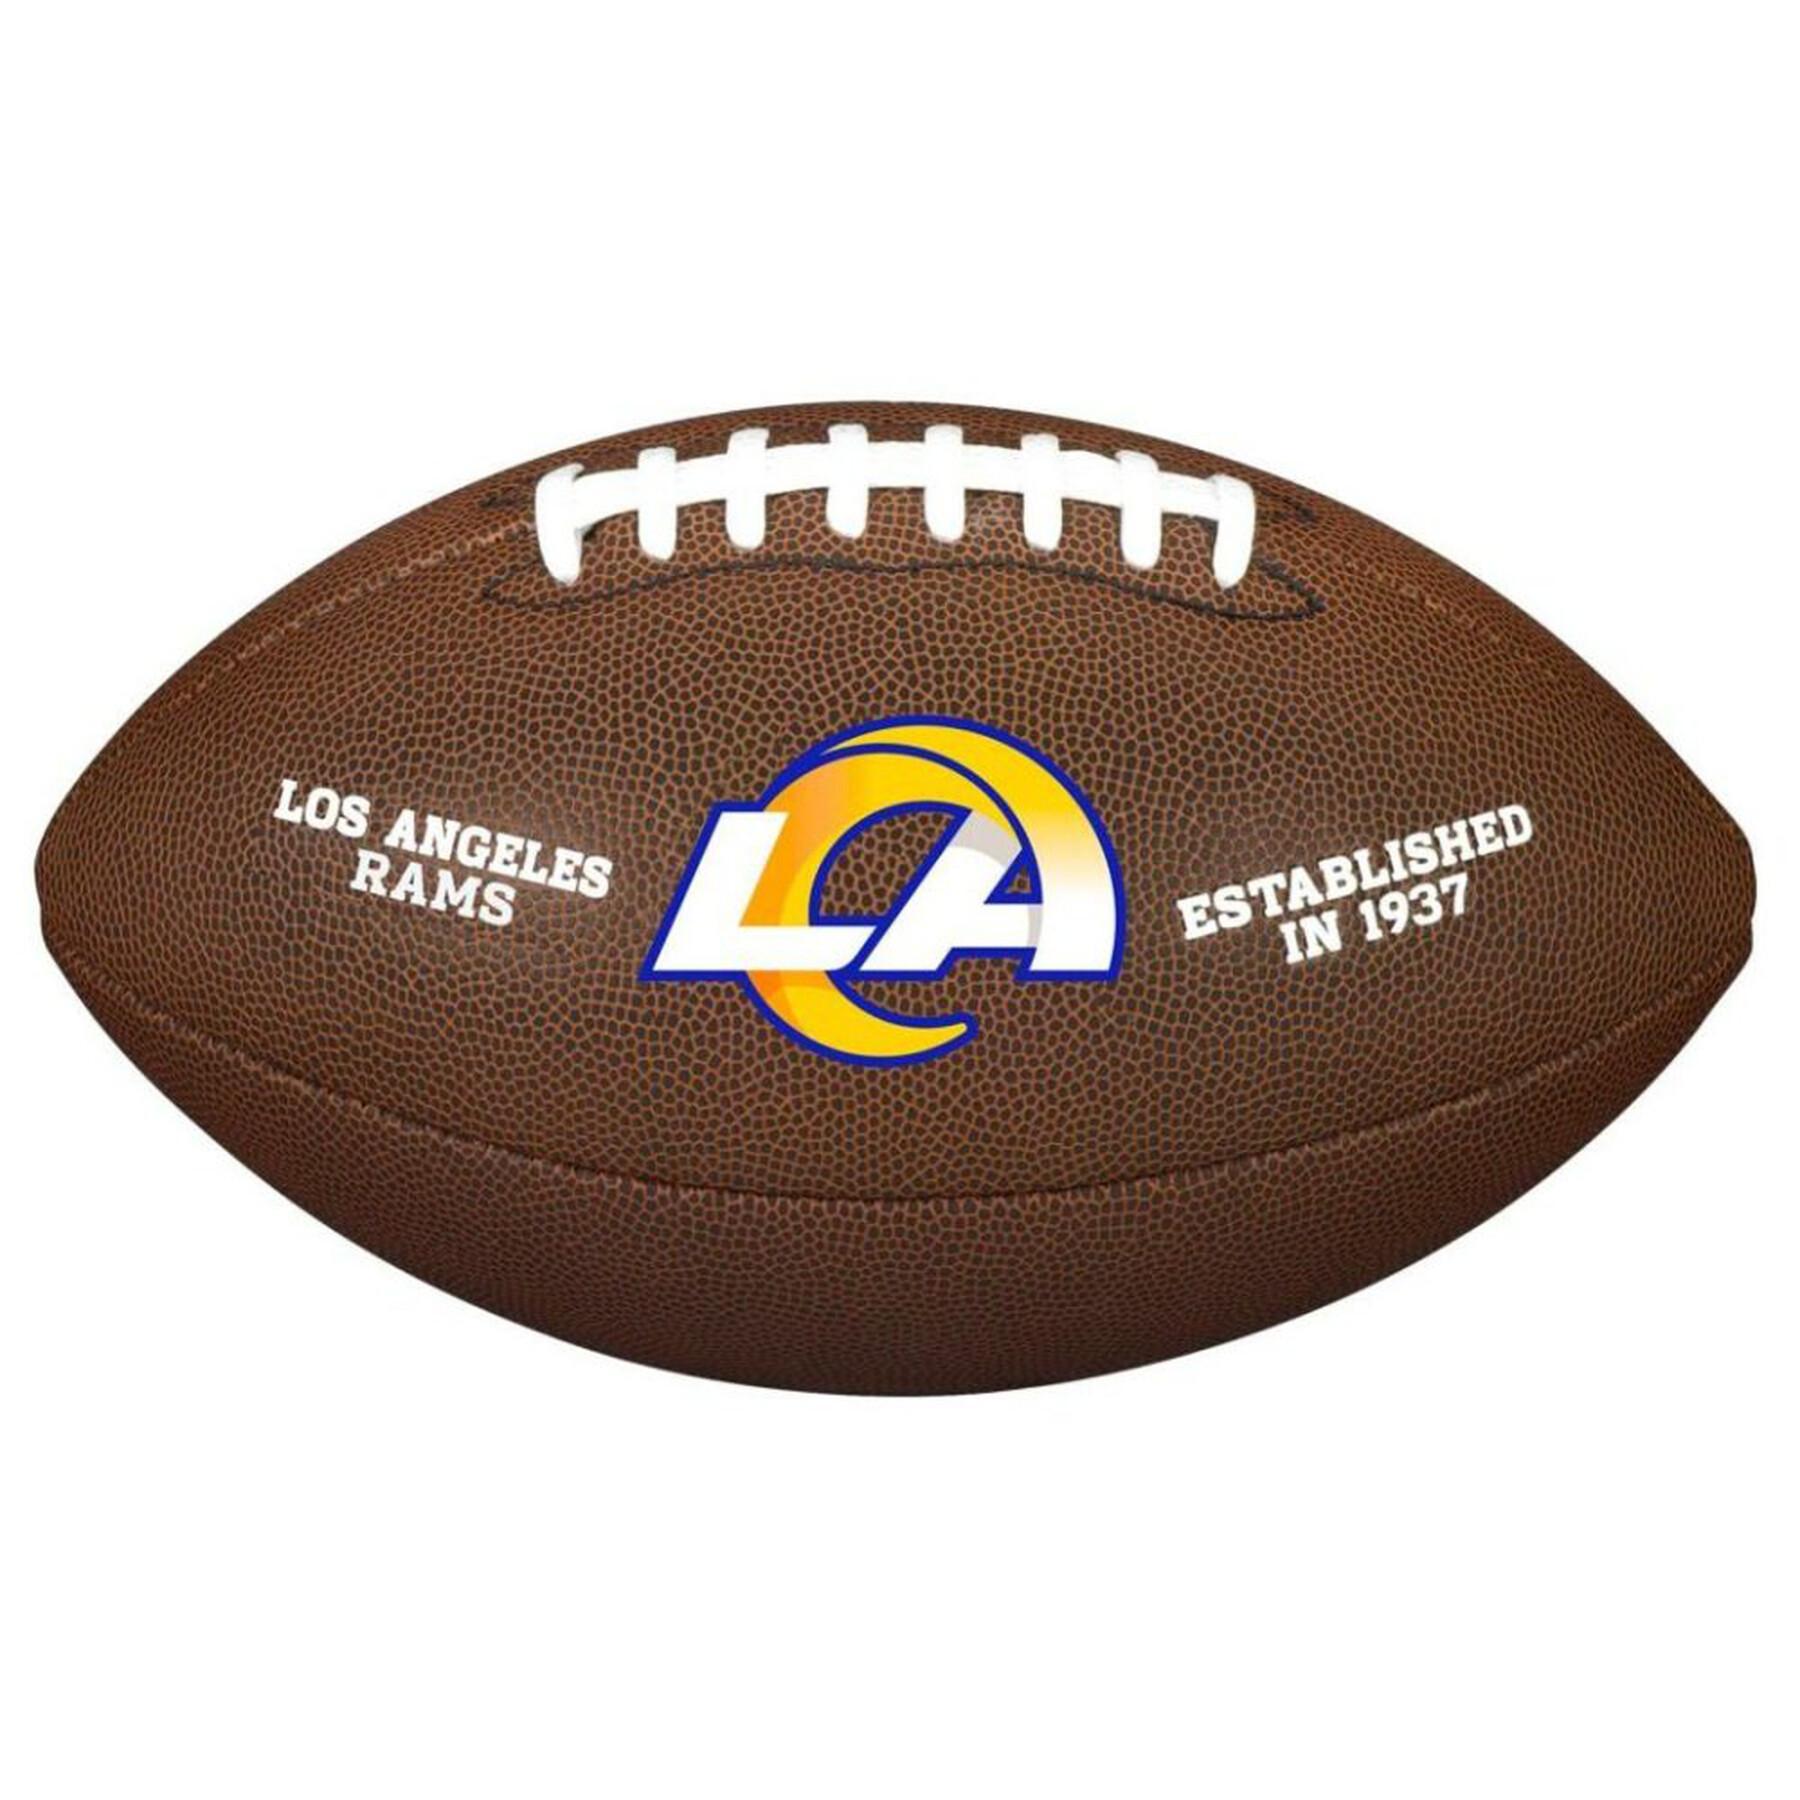 Ballong Wilson NFL Logo Composite XB